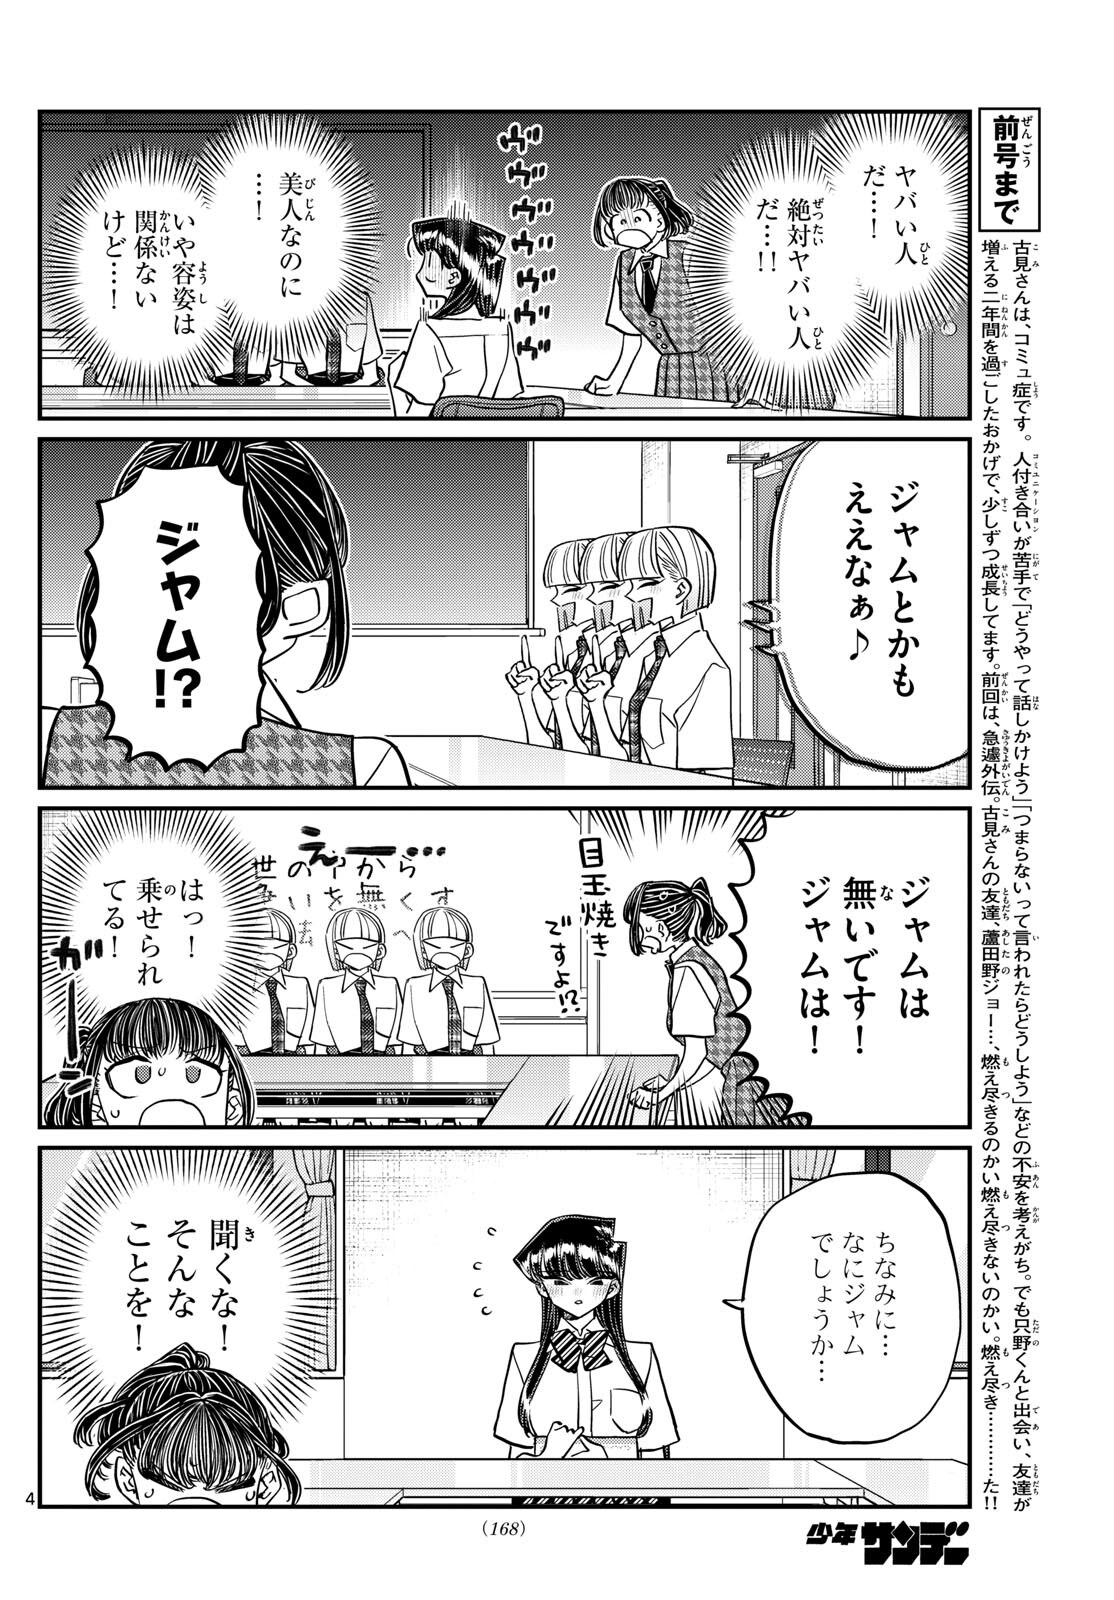 Komi-san wa Komyushou Desu - Chapter 441 - Page 4